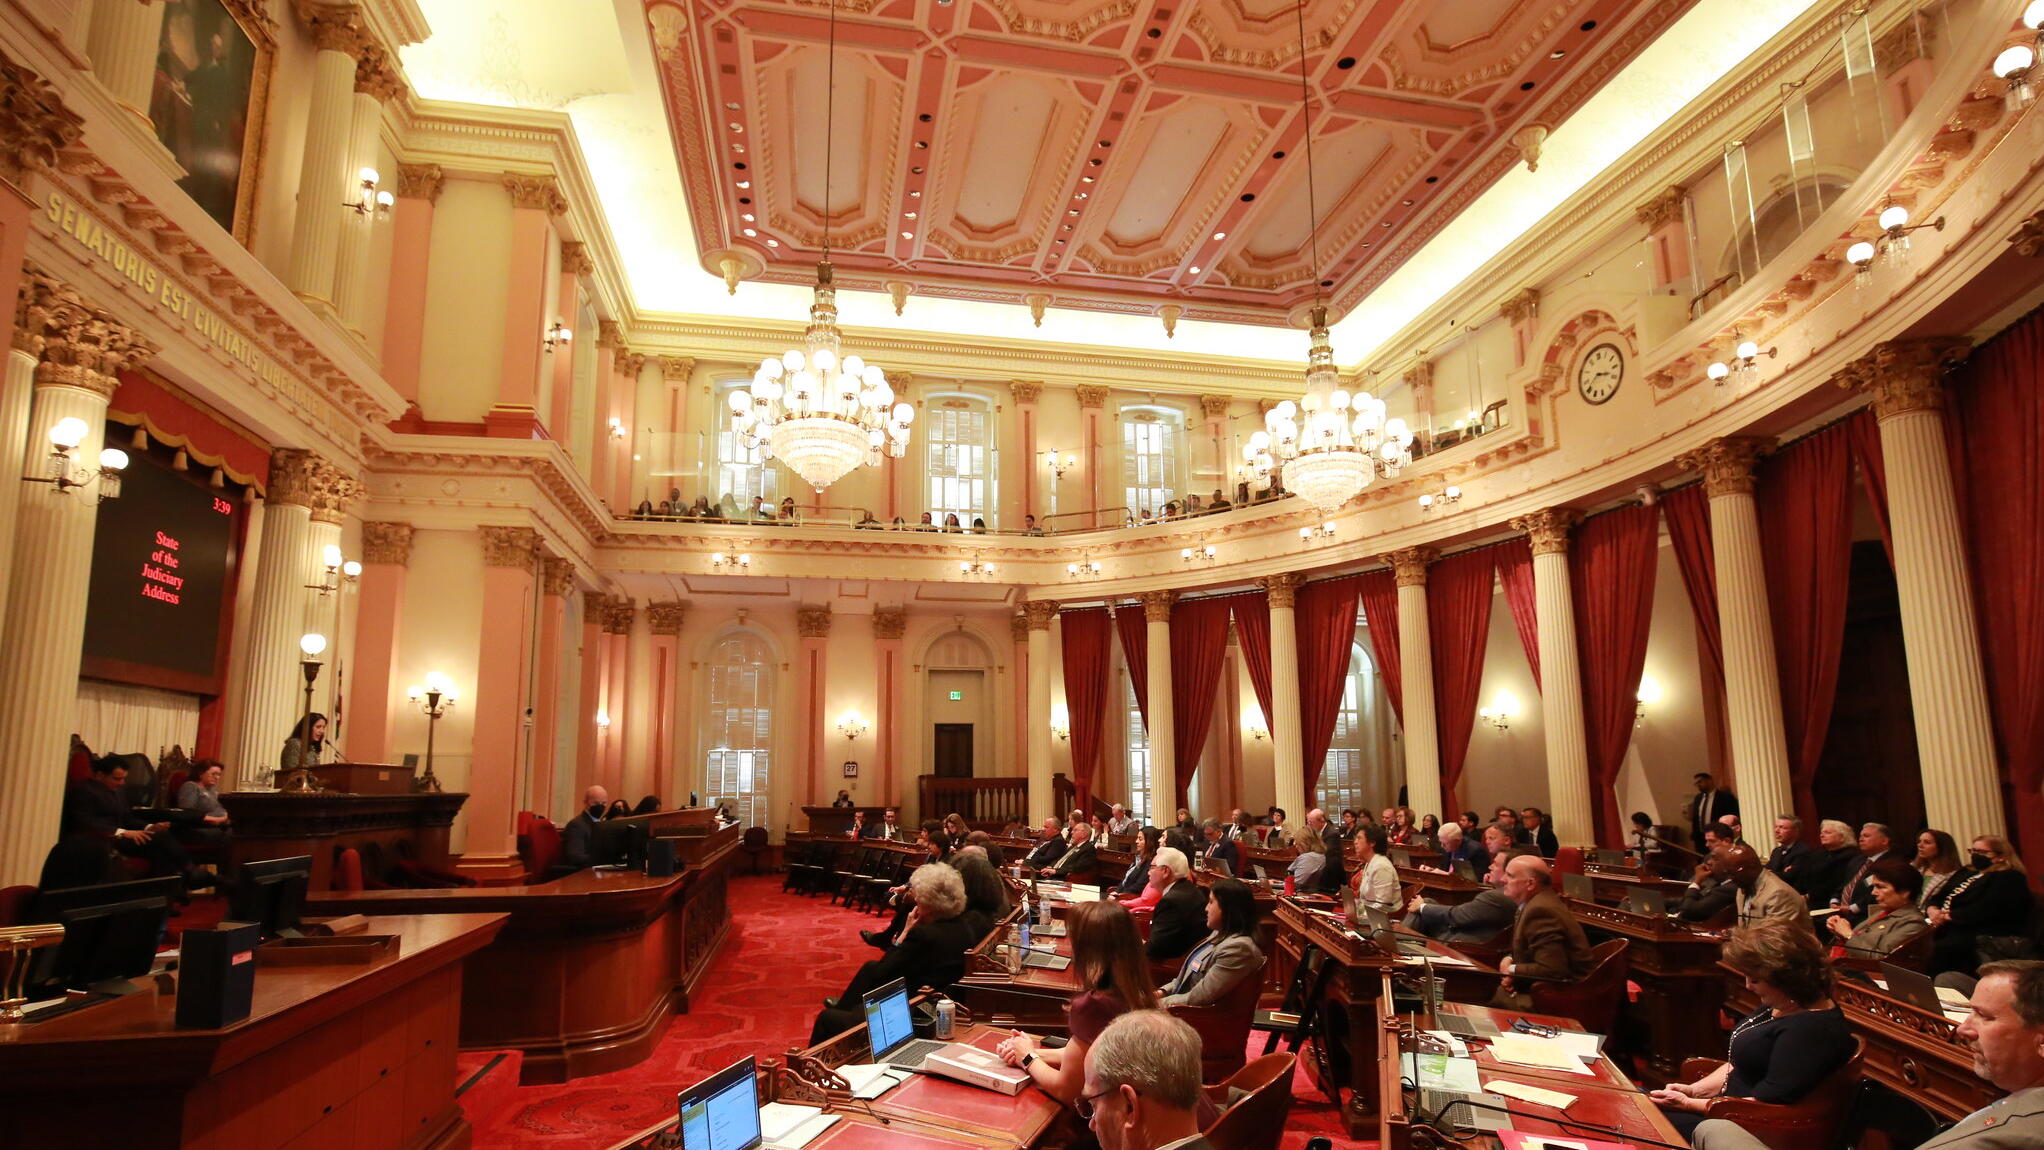 interior of senate